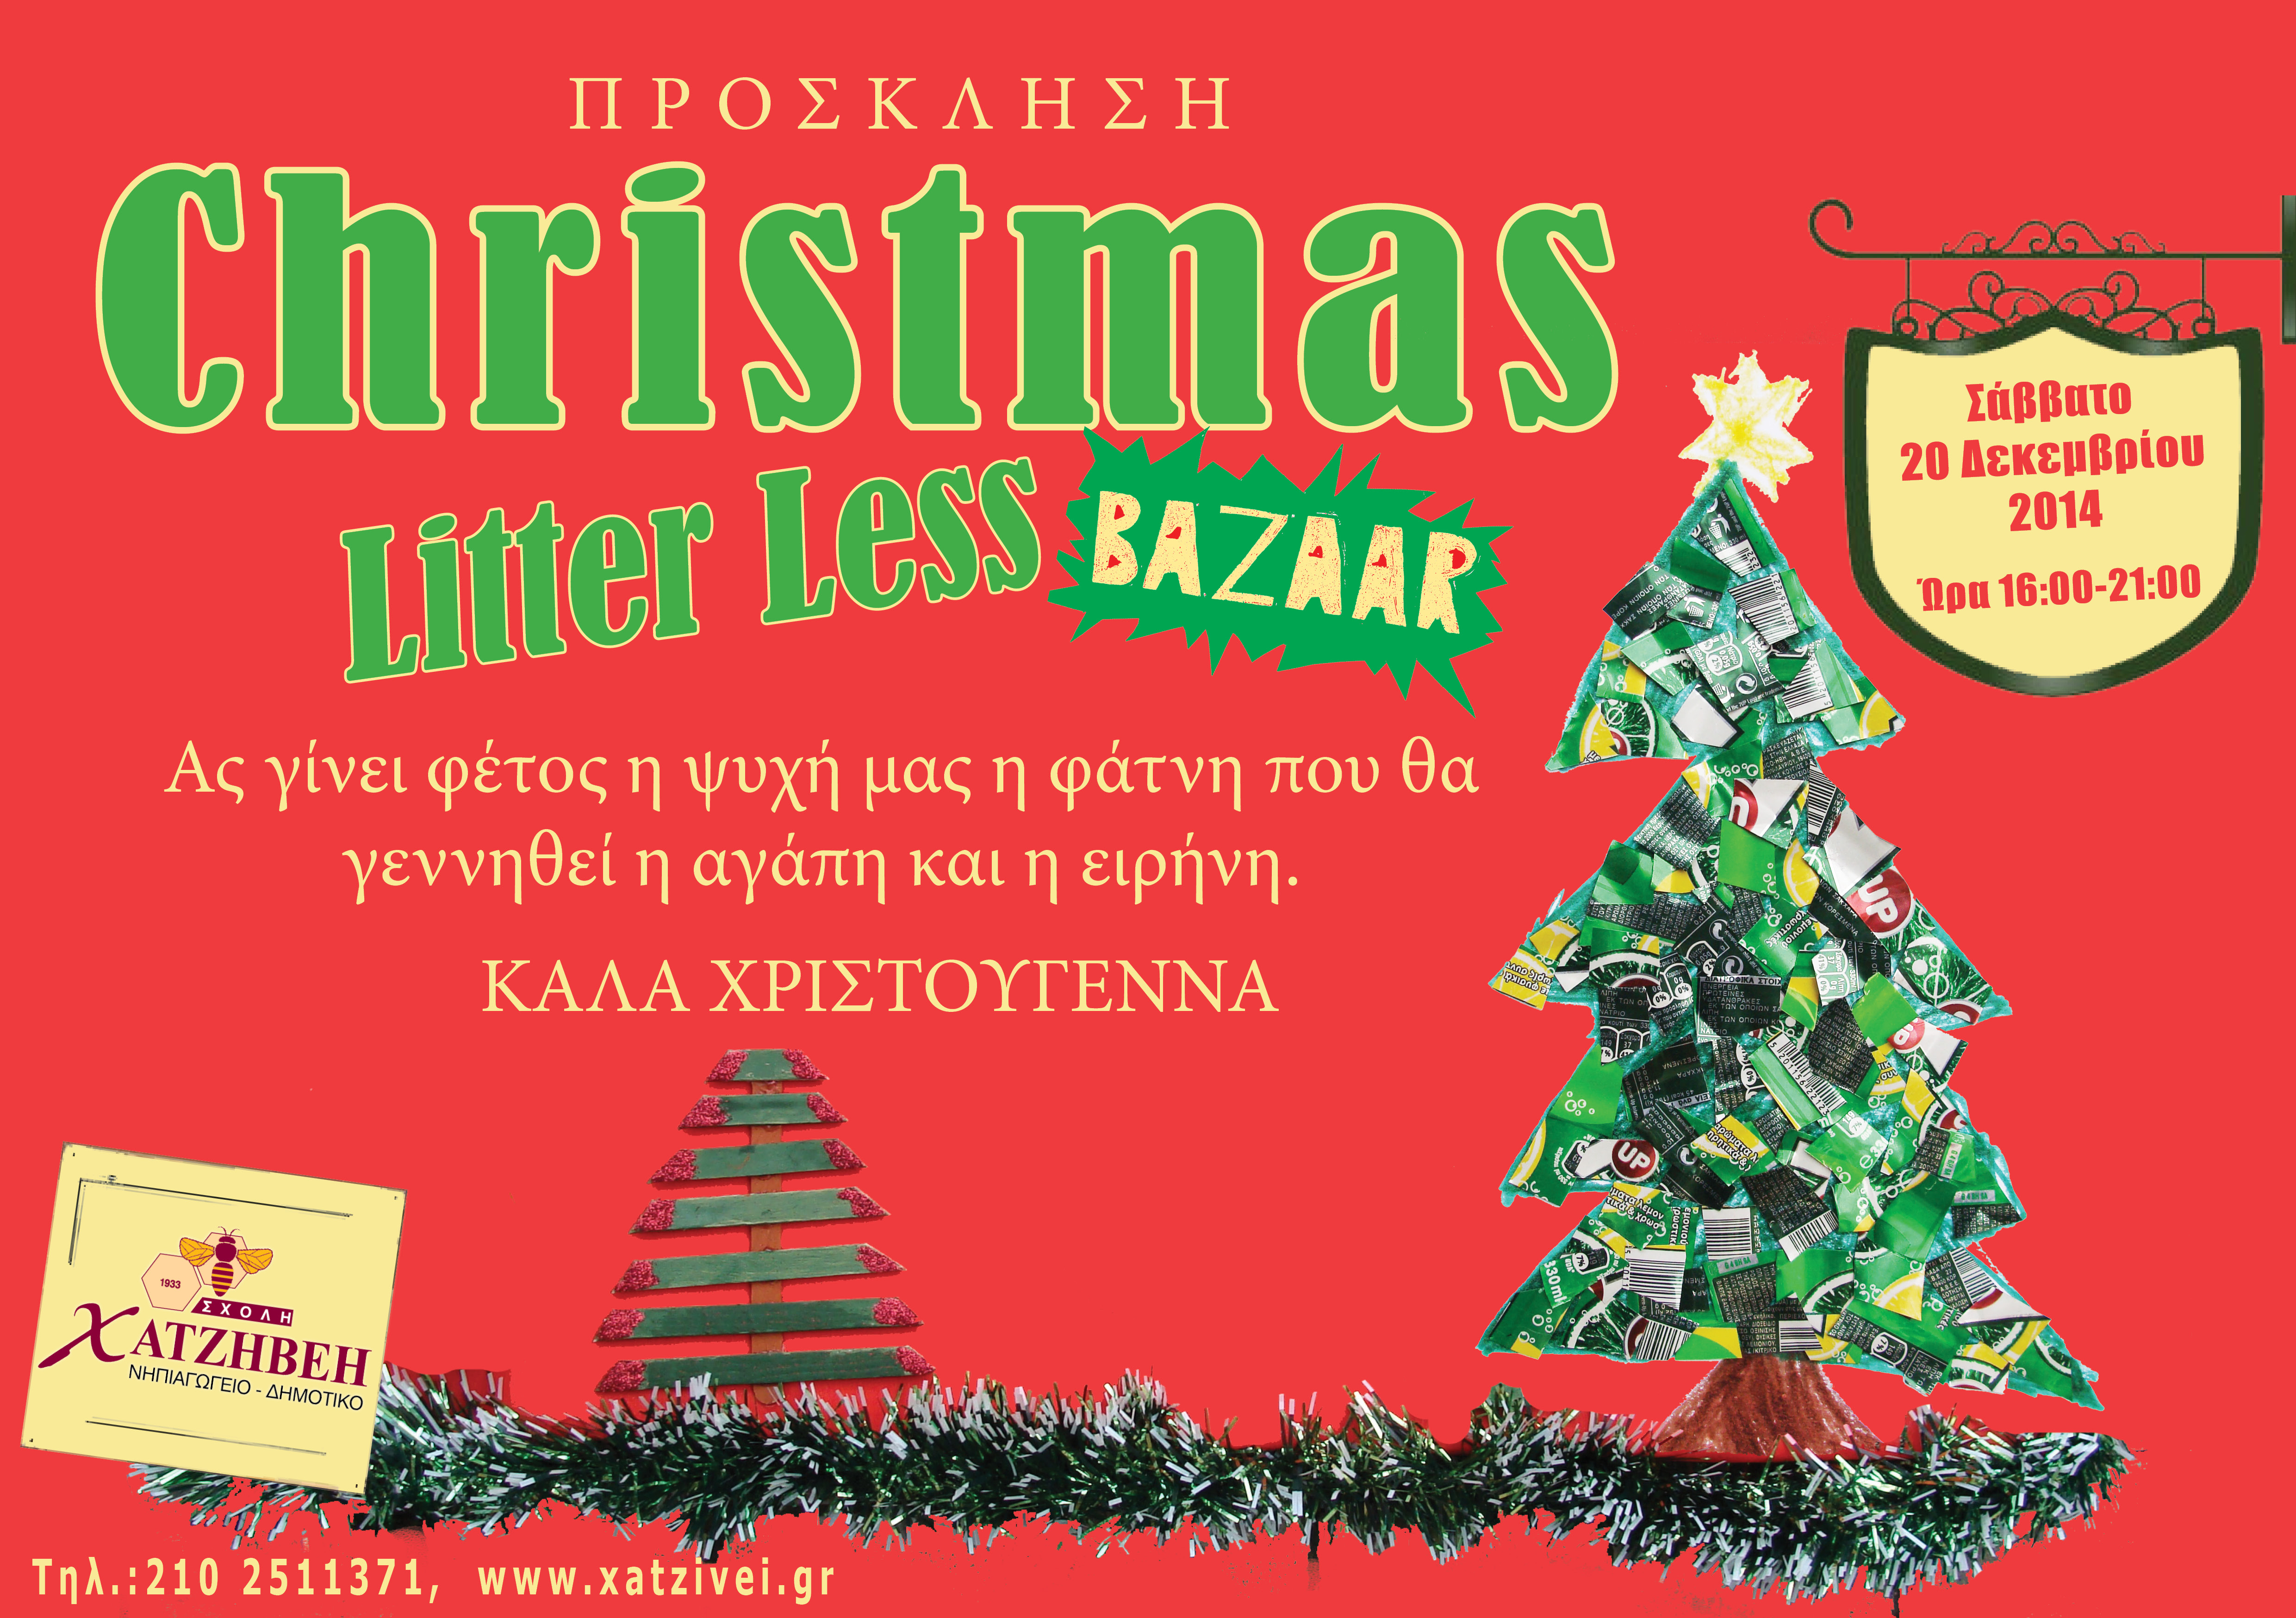 Σχολή Χατζήβεη – ΦΙΛΑΝΘΡΩΠΙΚΟ Christmas Litter Less BAZAAR